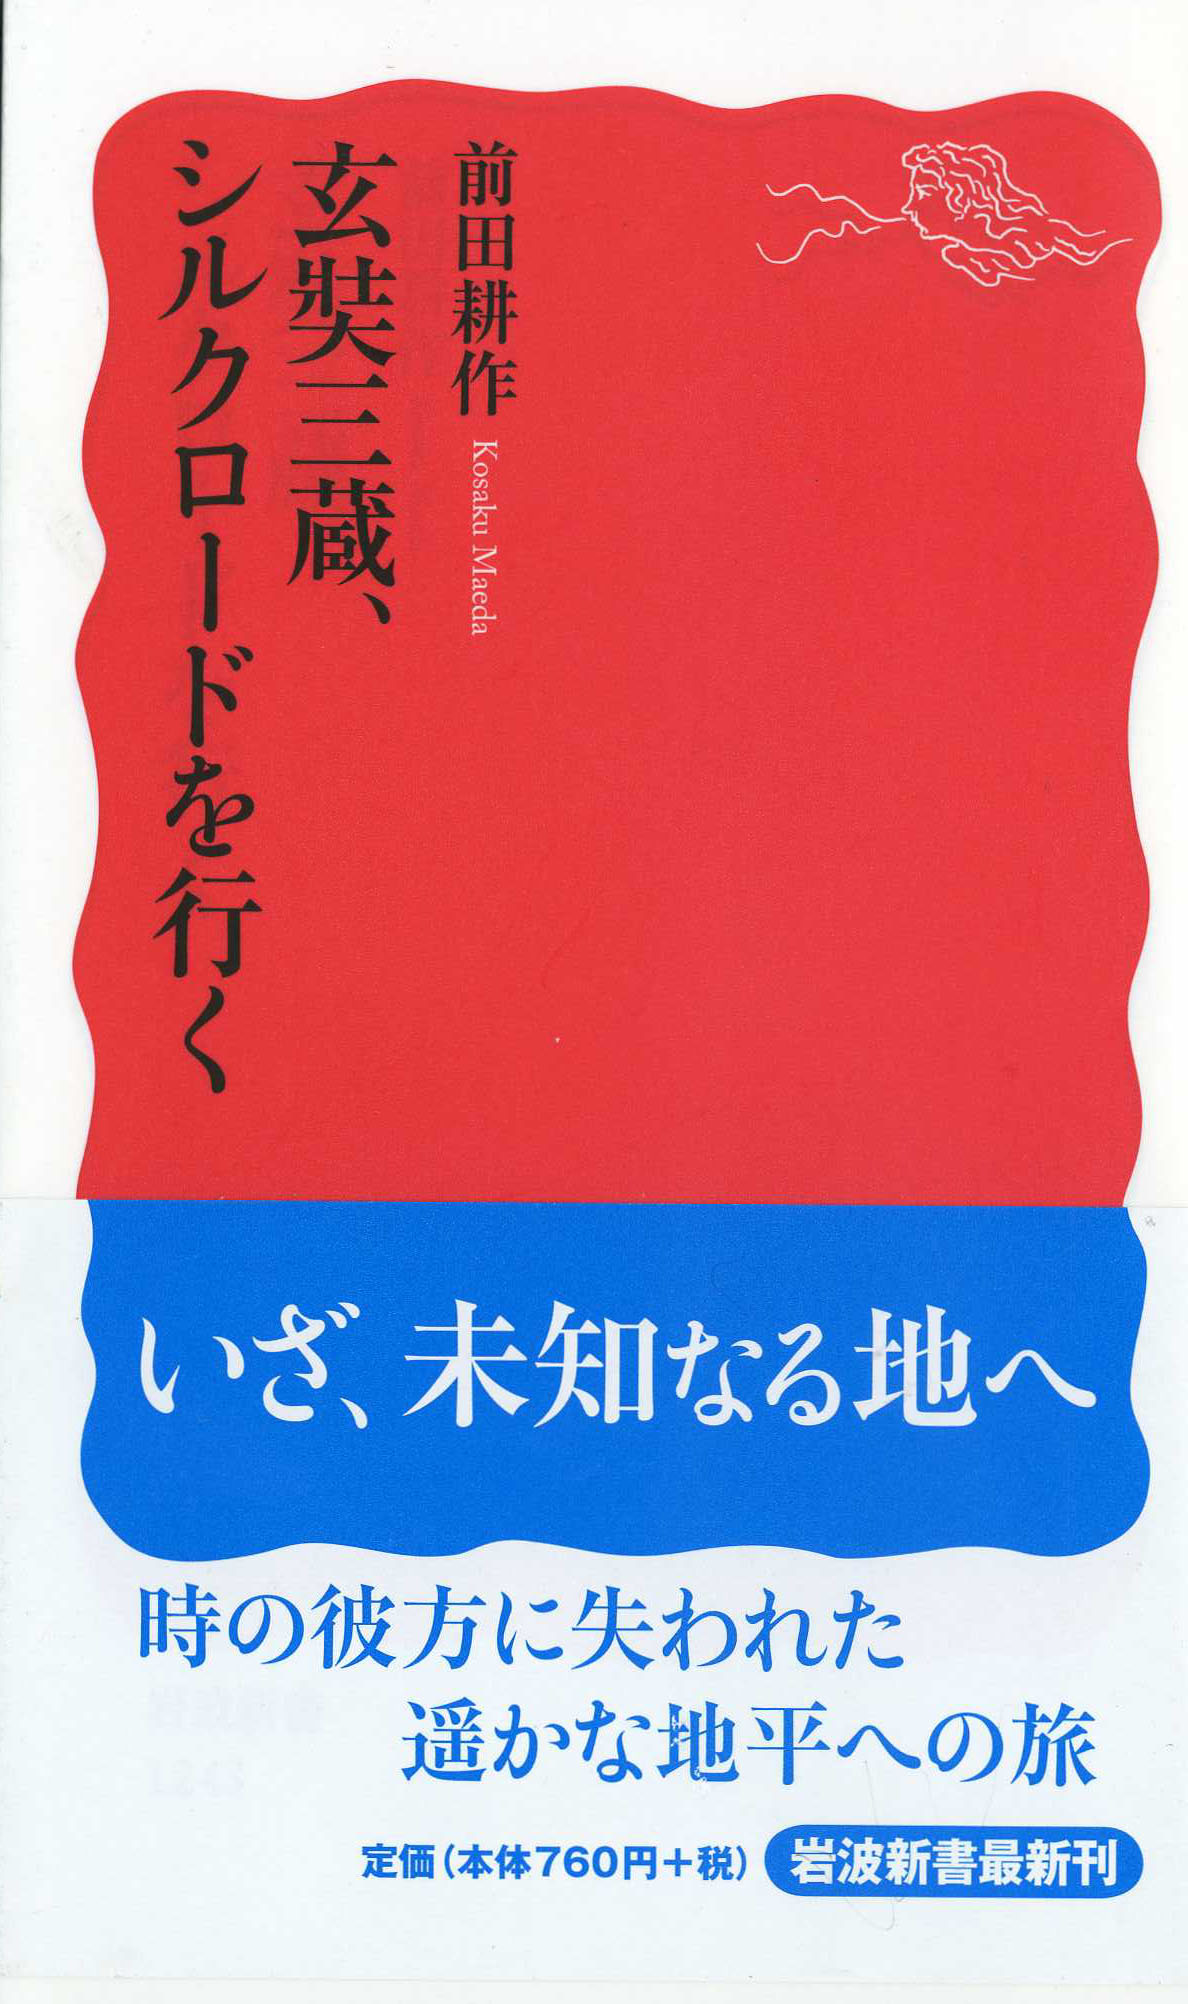 前田耕作先生の新刊新書『玄奘三蔵、シルクロードを行く』_d0106555_07710.jpg